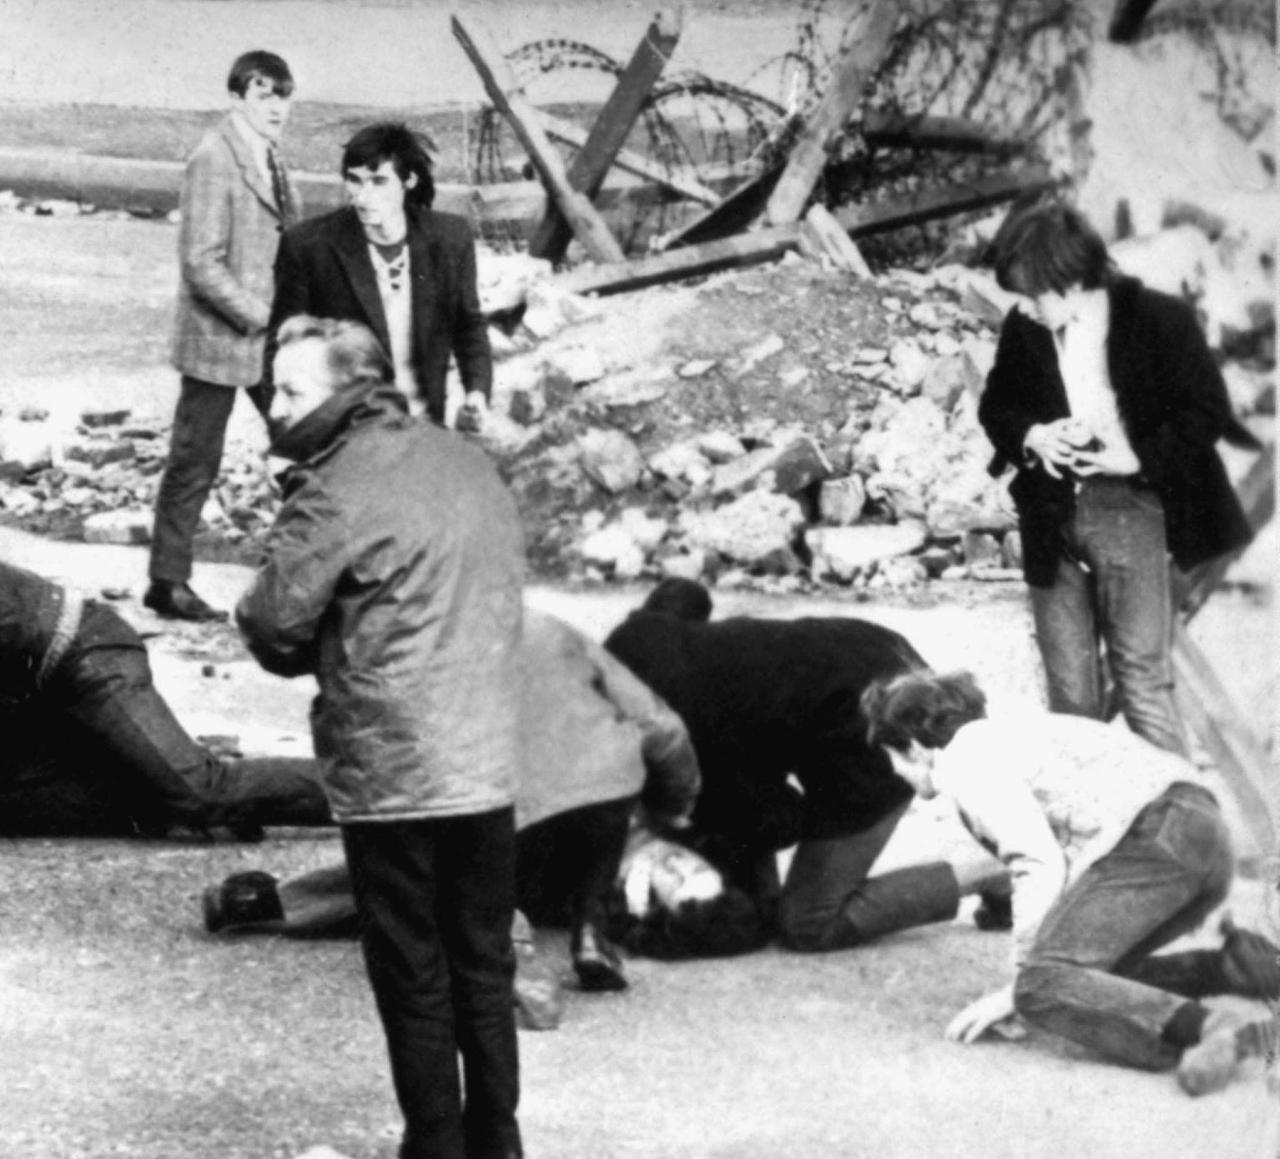 Nordiren kümmern sich nach den blutigen Auseinandersetzungen am sogenannten Bloody Sunday in der nordirischen Stadt Derry um ein am Boden liegendes Opfer. 13 katholische Demonstranten wurden damals während einer friedlichen, jedoch verbotenen Kundgebung von britischen Fallschirmjägern erschossen.